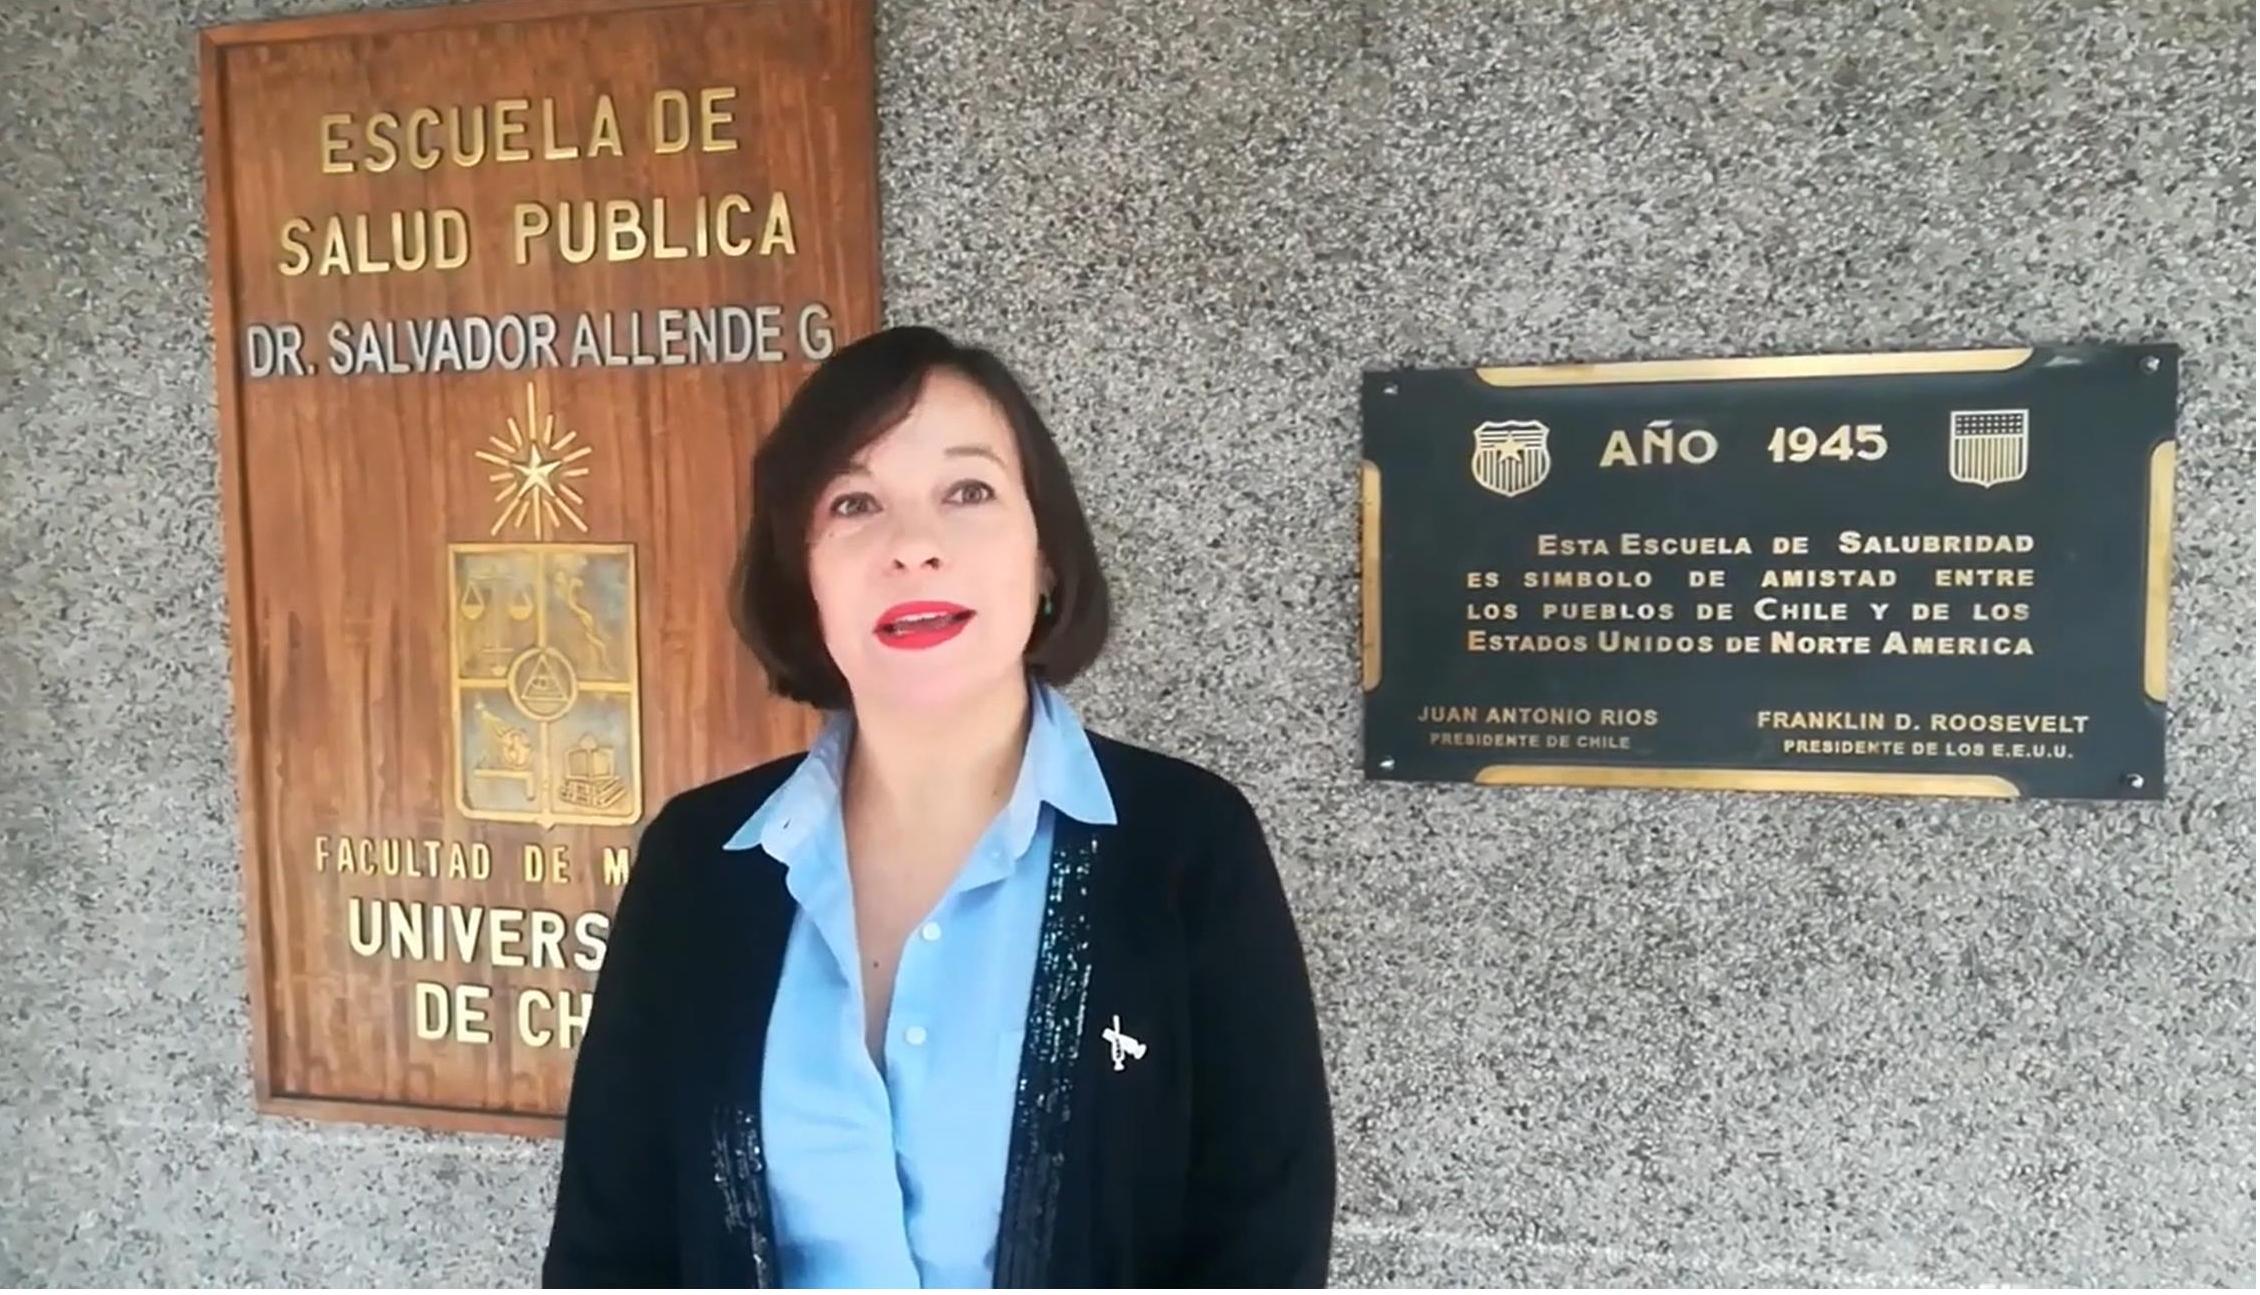 La profesora María Paz Bertoglia, parte del equipo investigador MOVID-19 y académica de la Escuela de Salud Pública de la U. de Chile